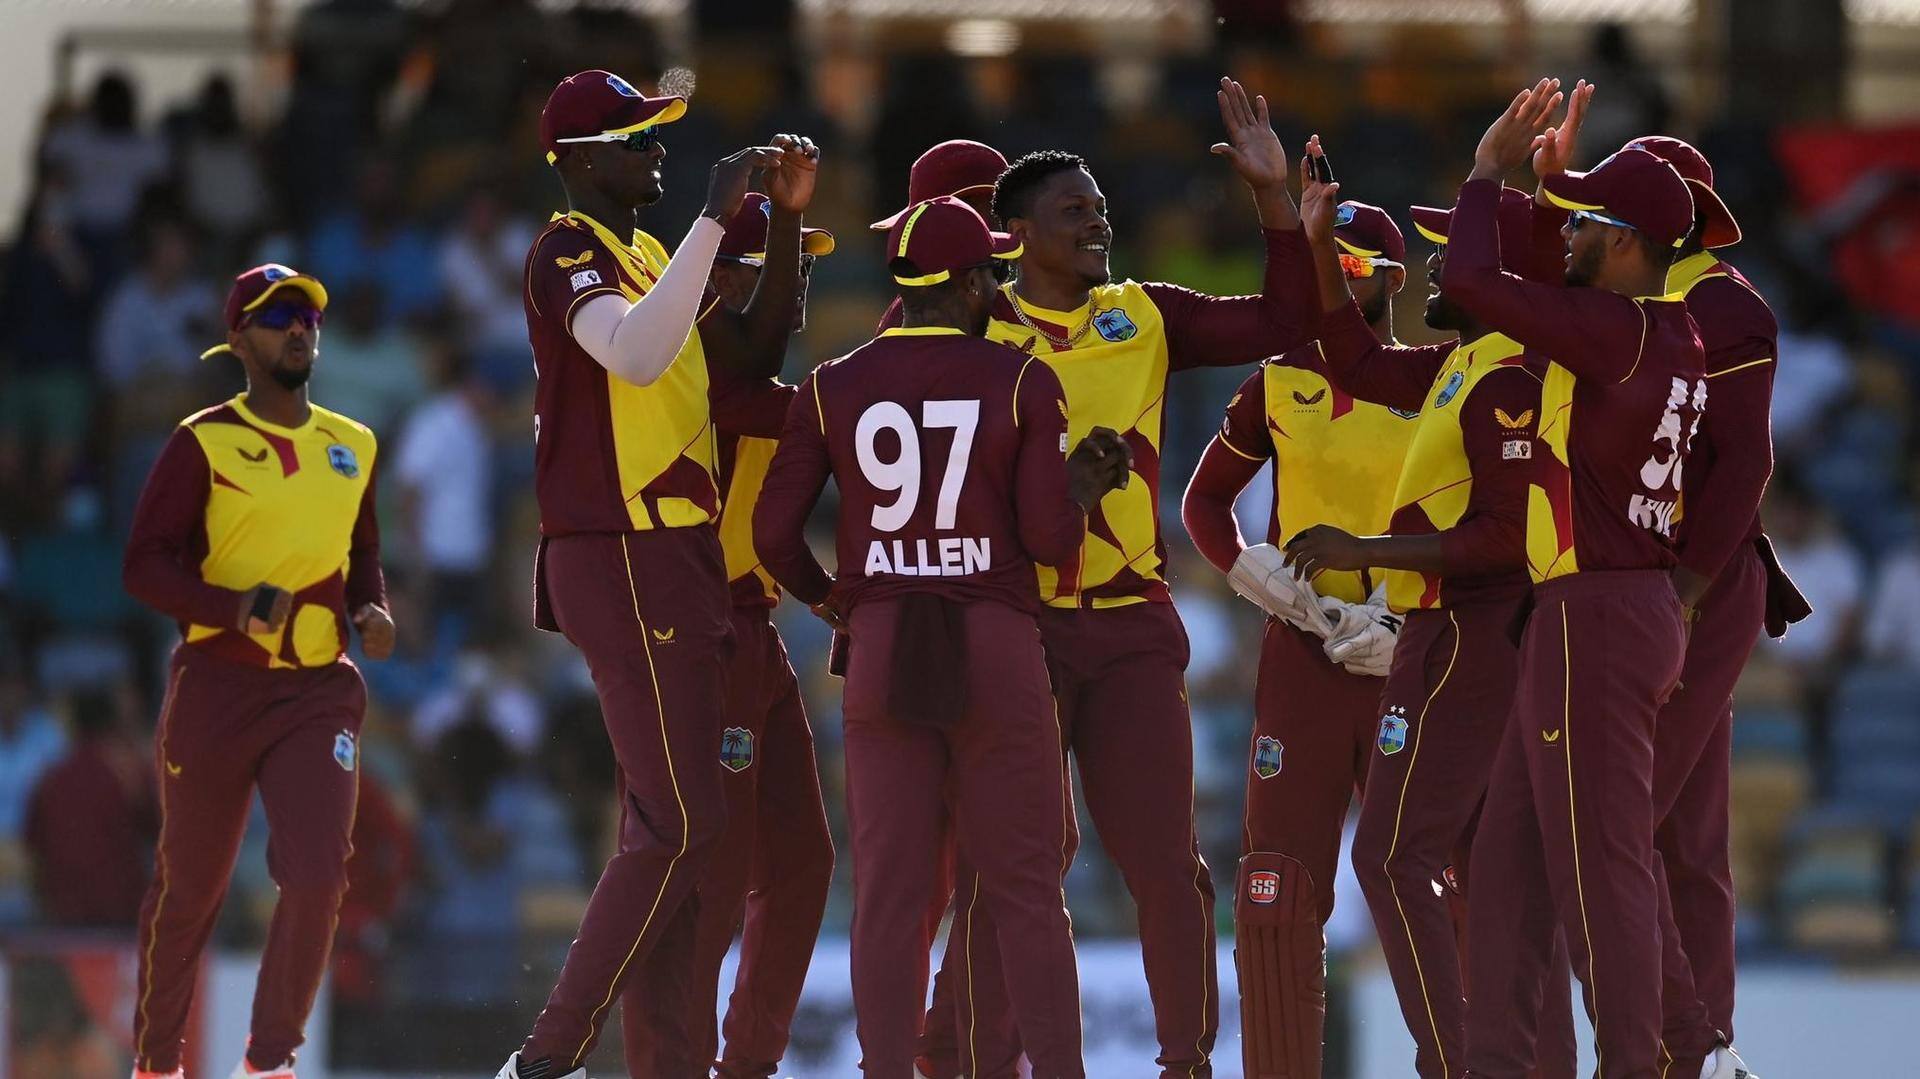 1st ODI, West Indies set to lock horns against UAE